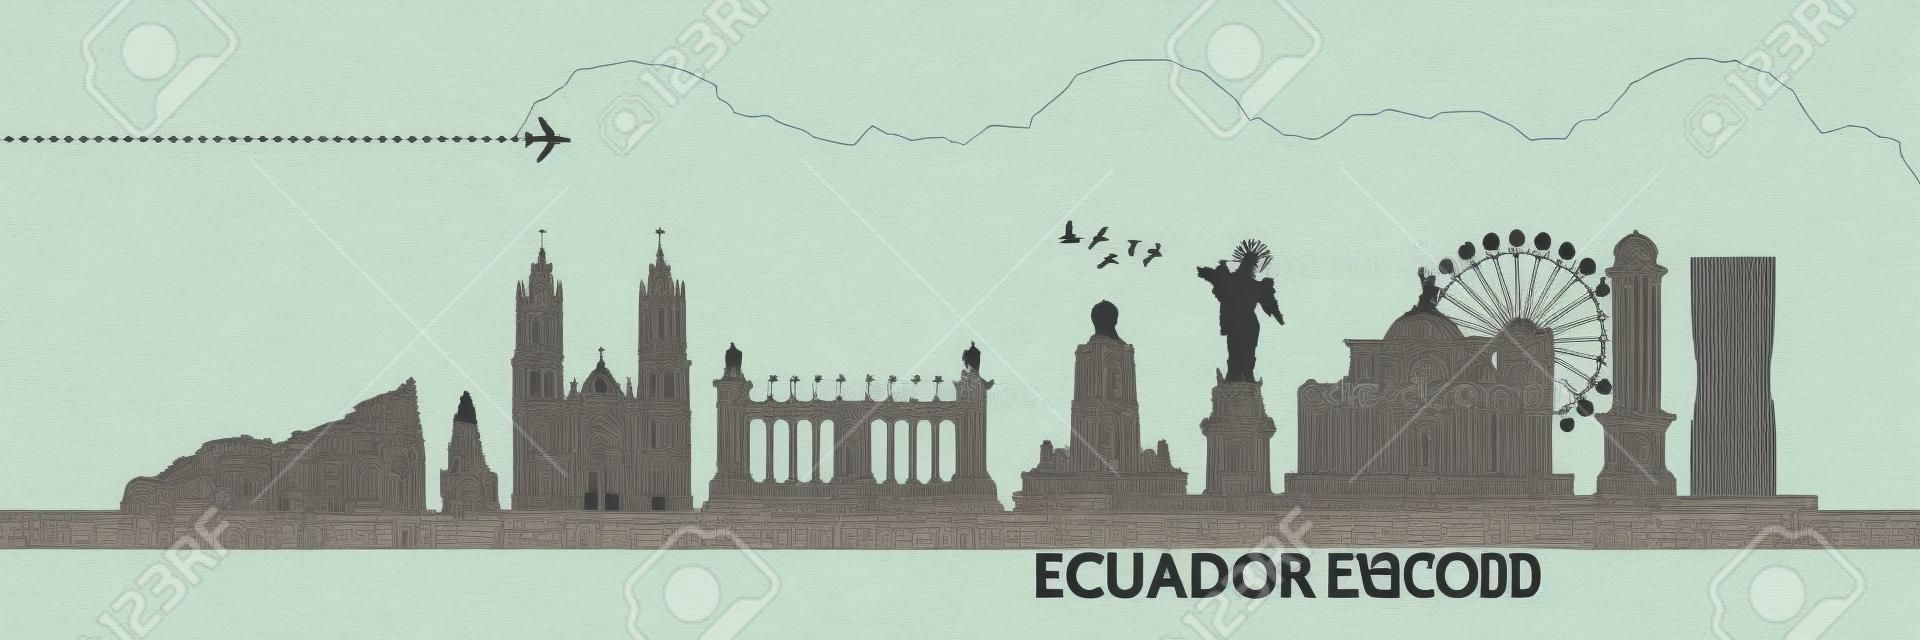 Illustration vectorielle grand de destination de voyage de l'Équateur.